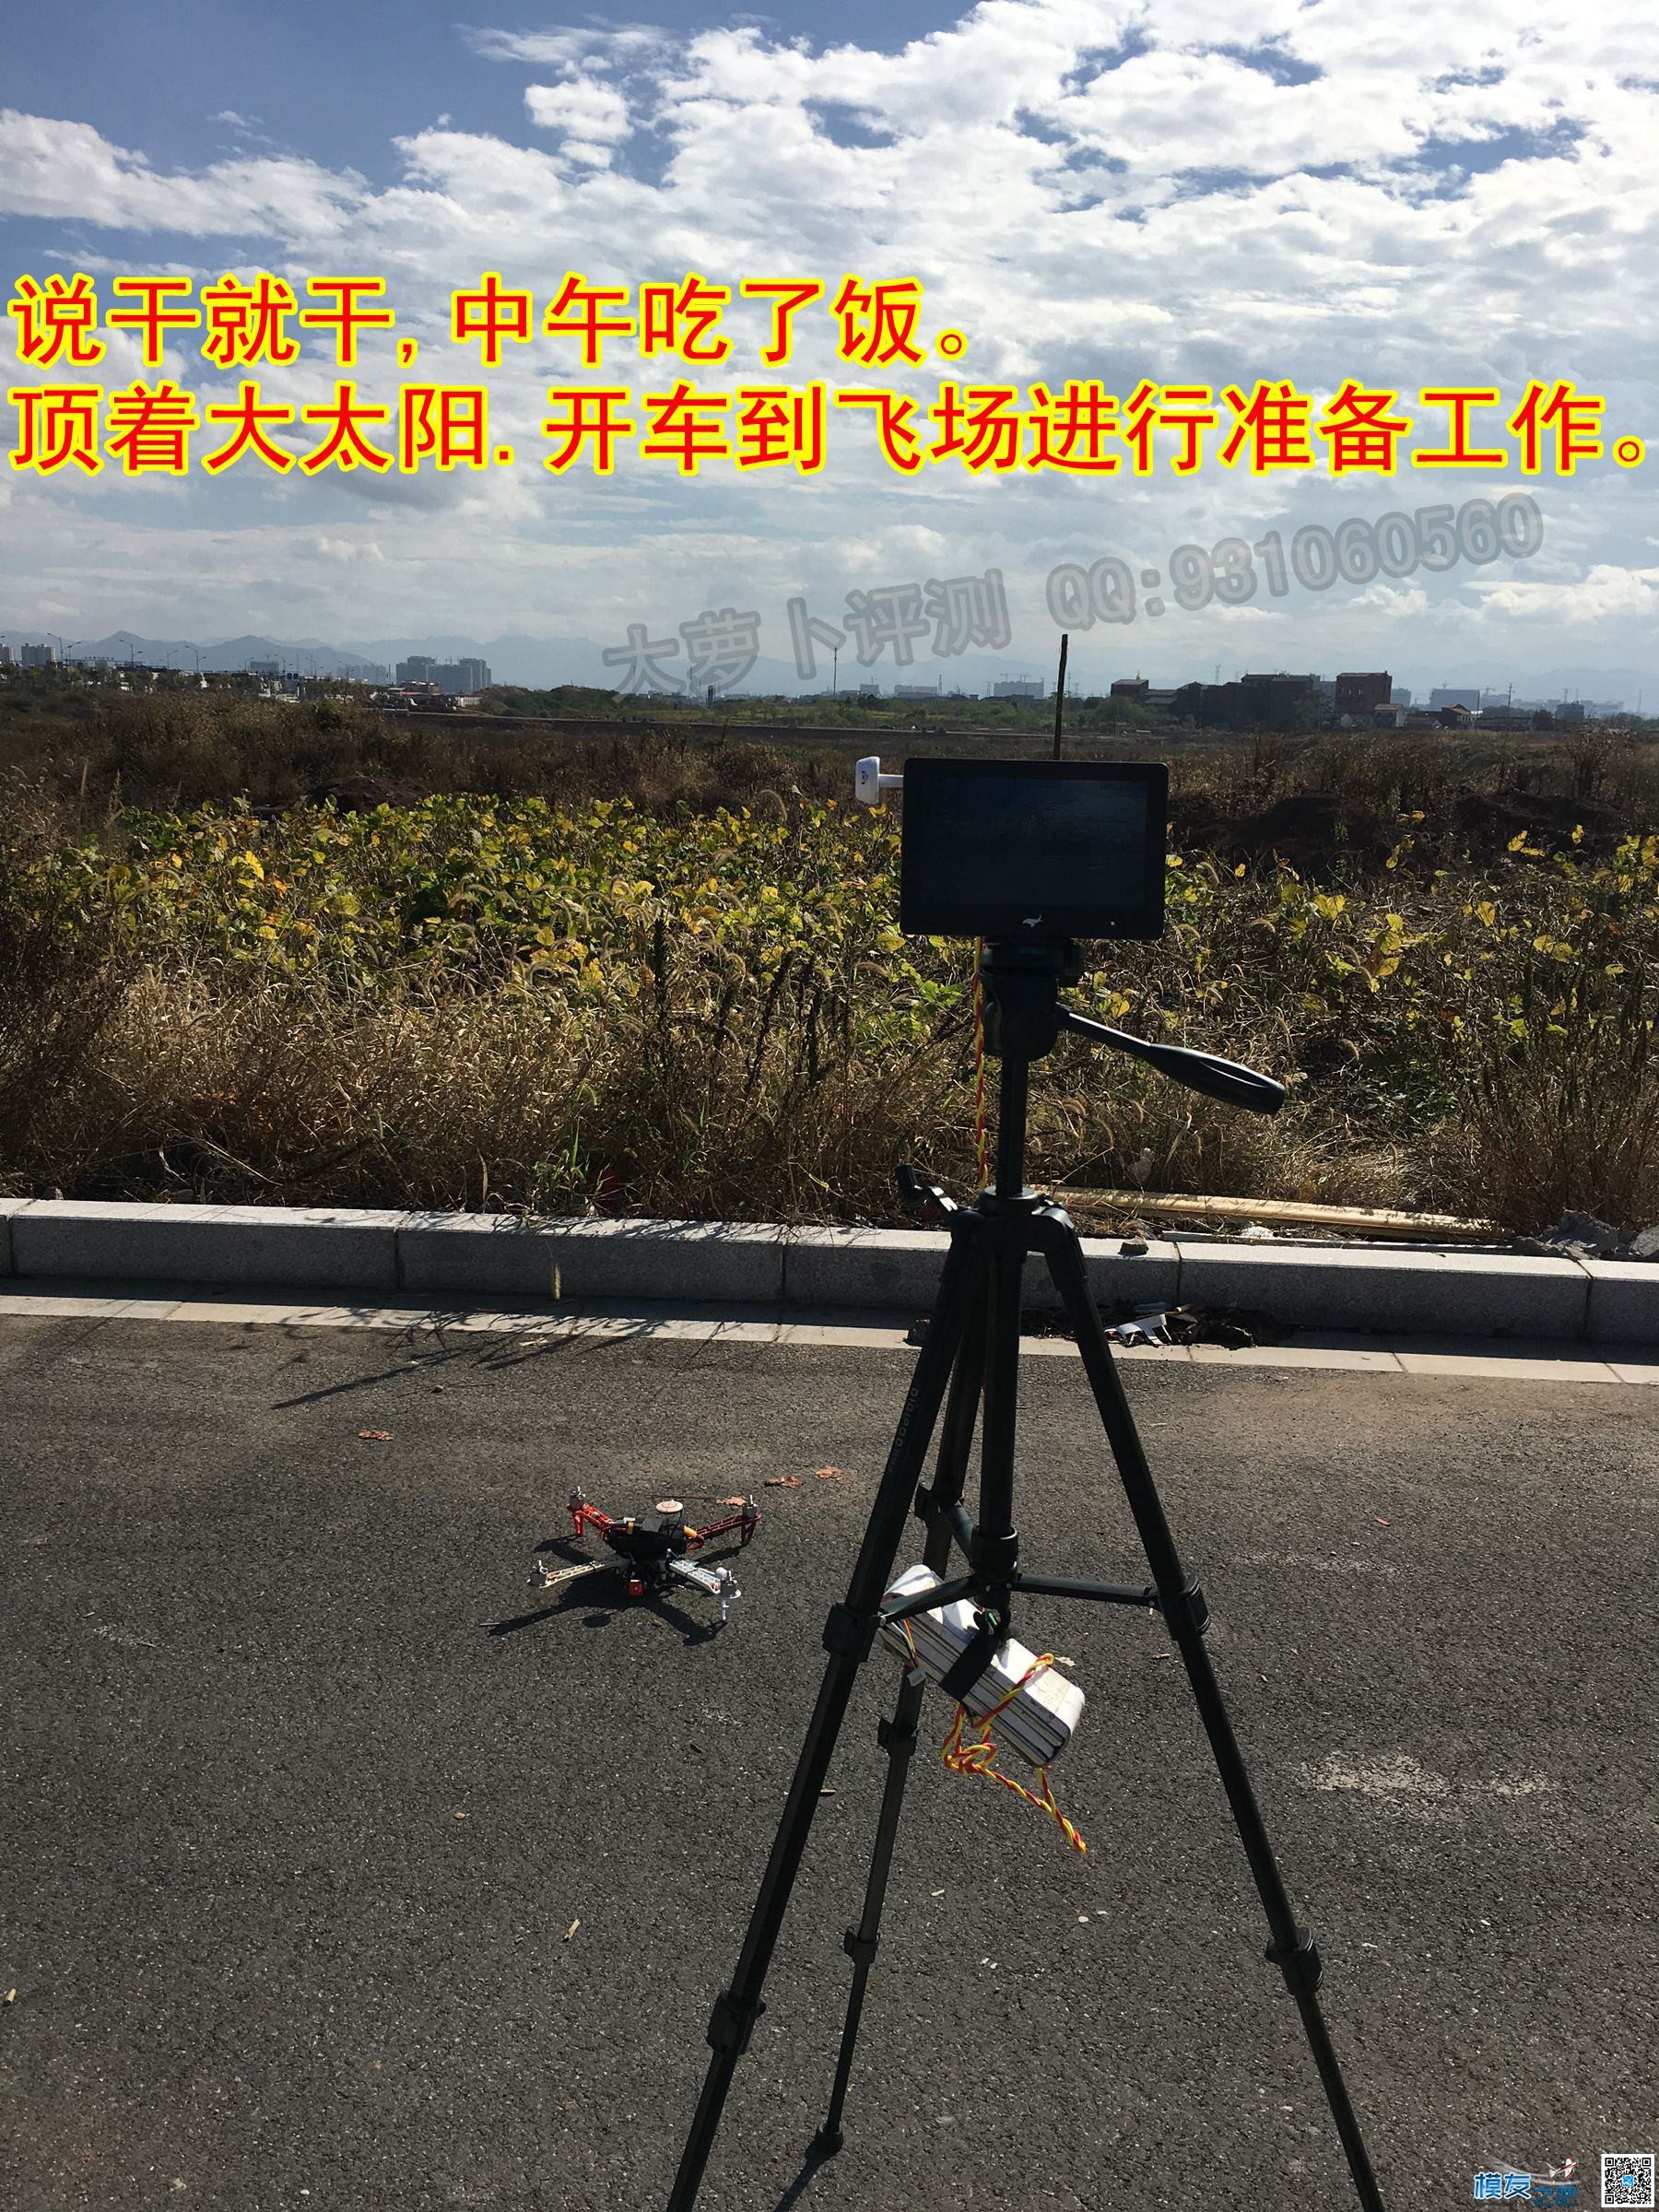 狼哥送测-5.8G天线评测(飞行) 萝卜评测图文+视频-配置差勿进 天线 作者:义乌大萝卜 2881 